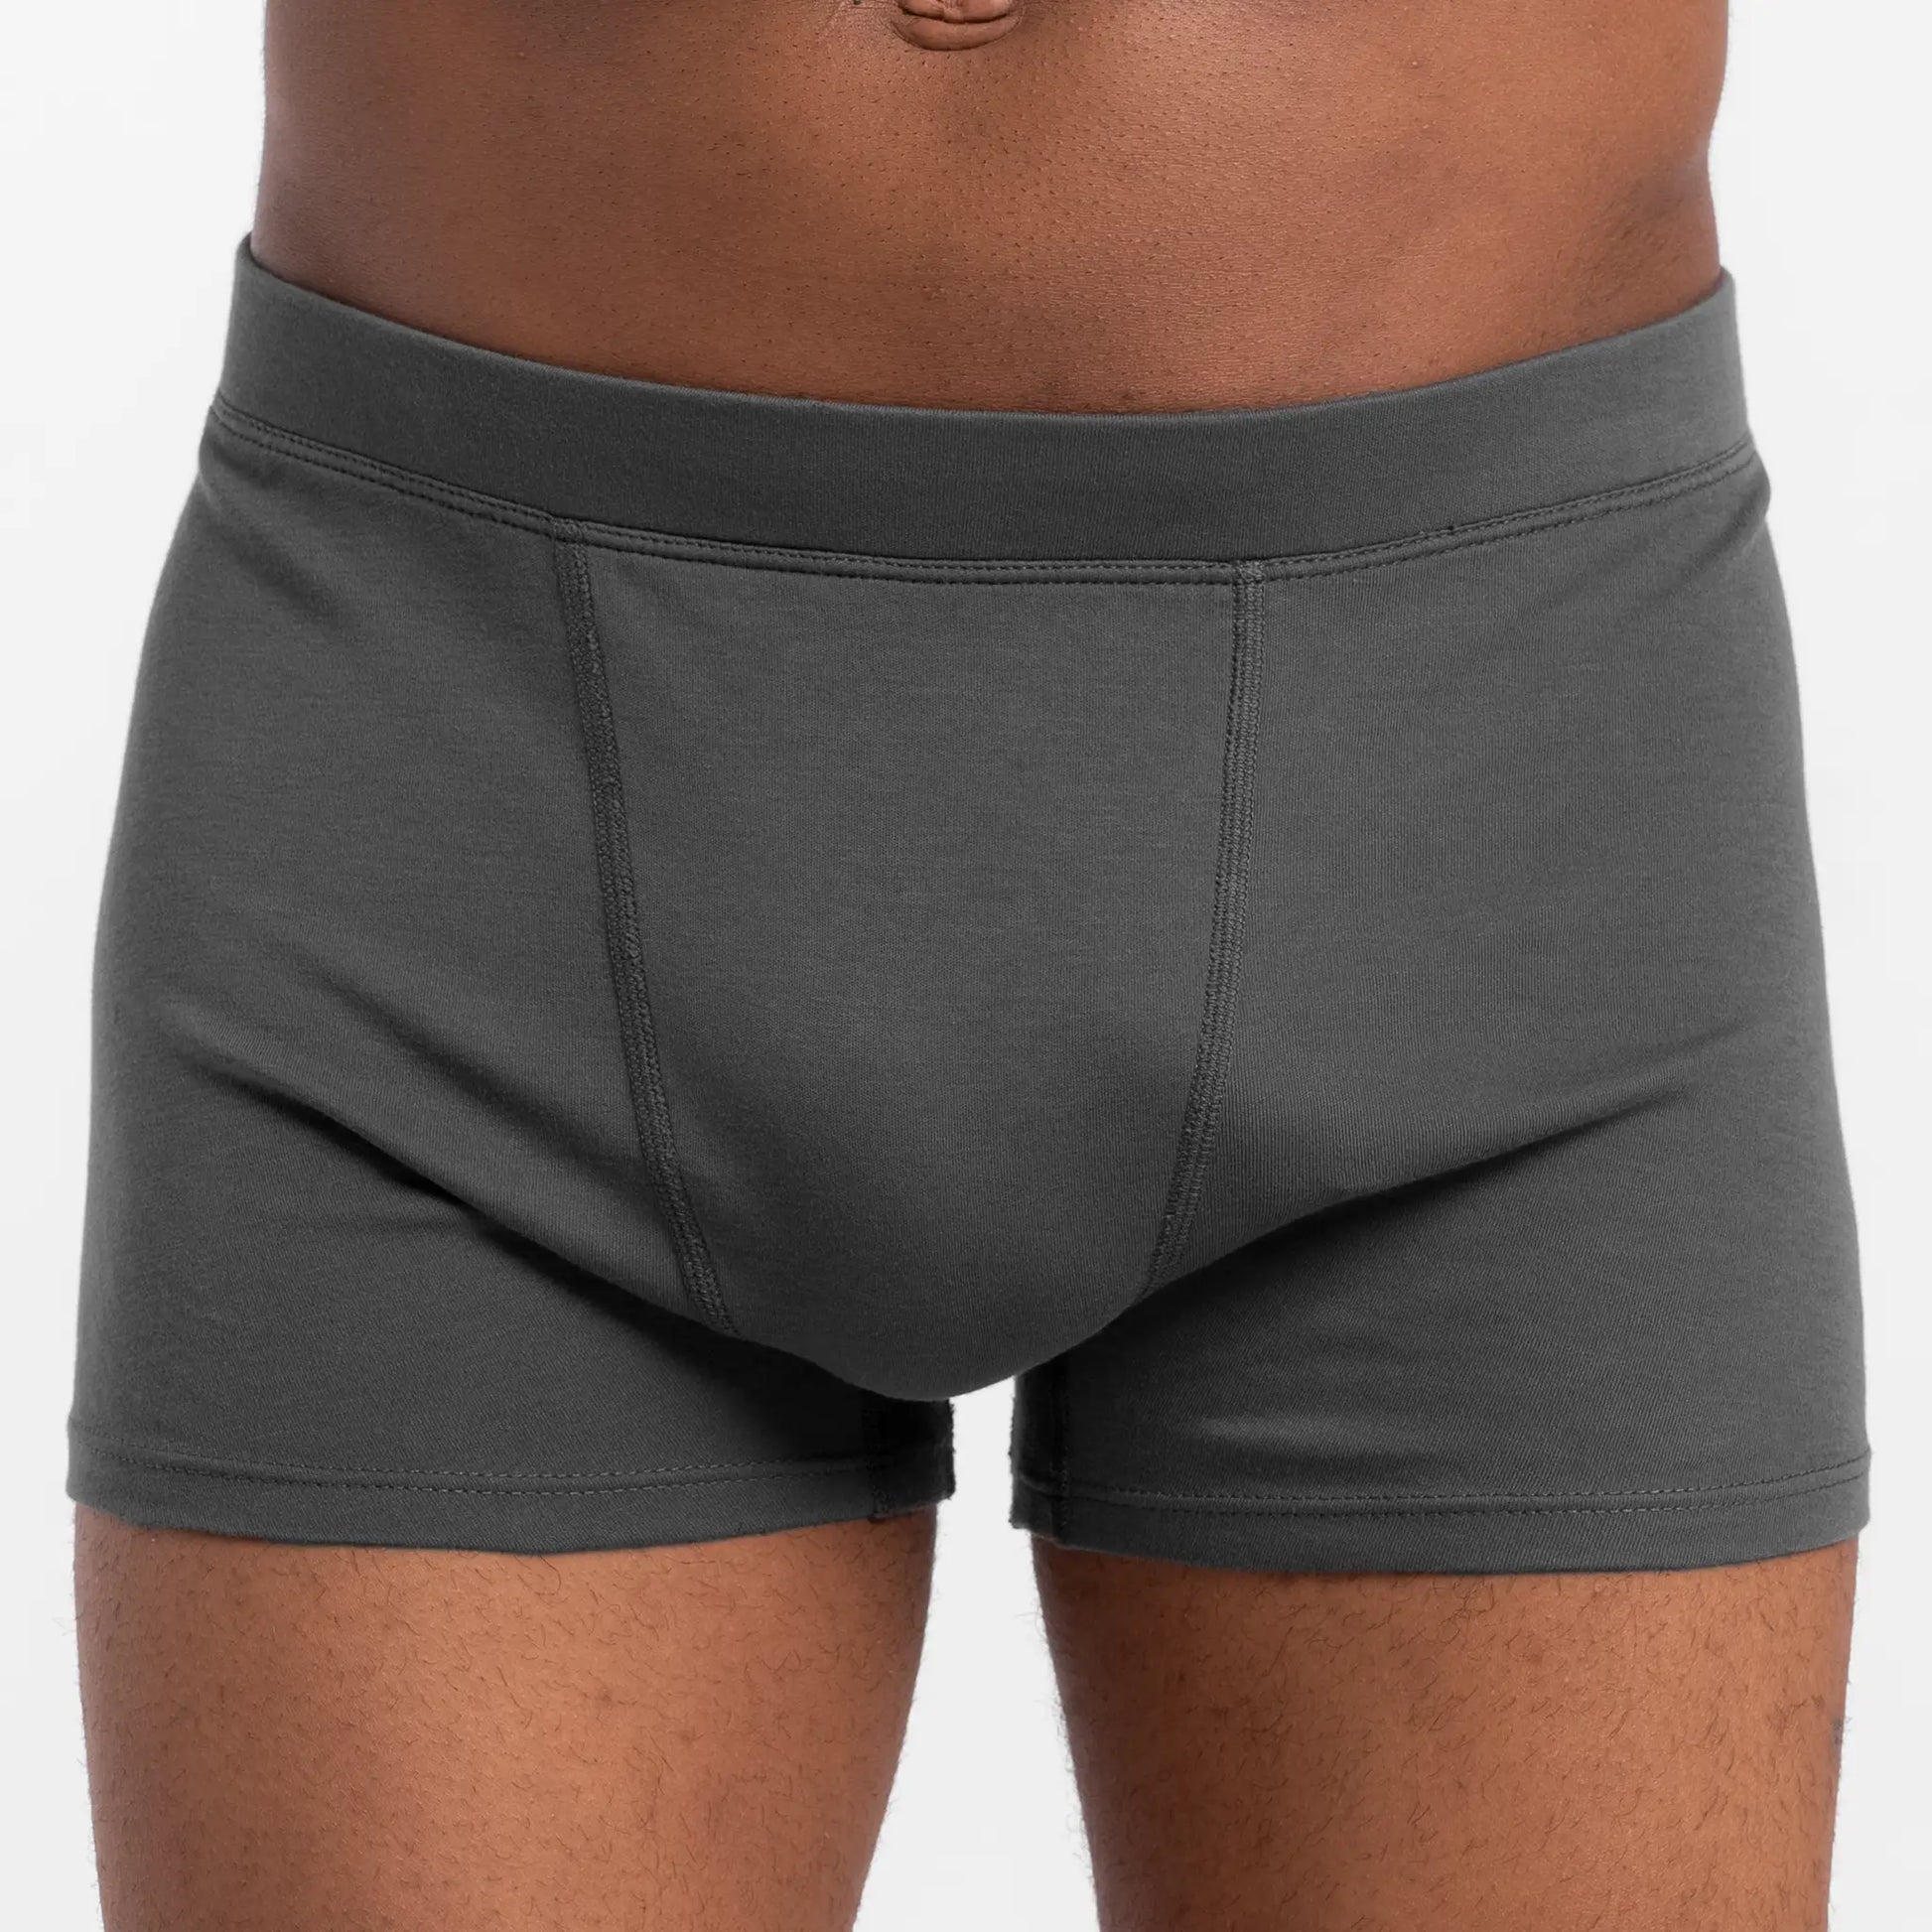 Men's 100% Cotton Underwear